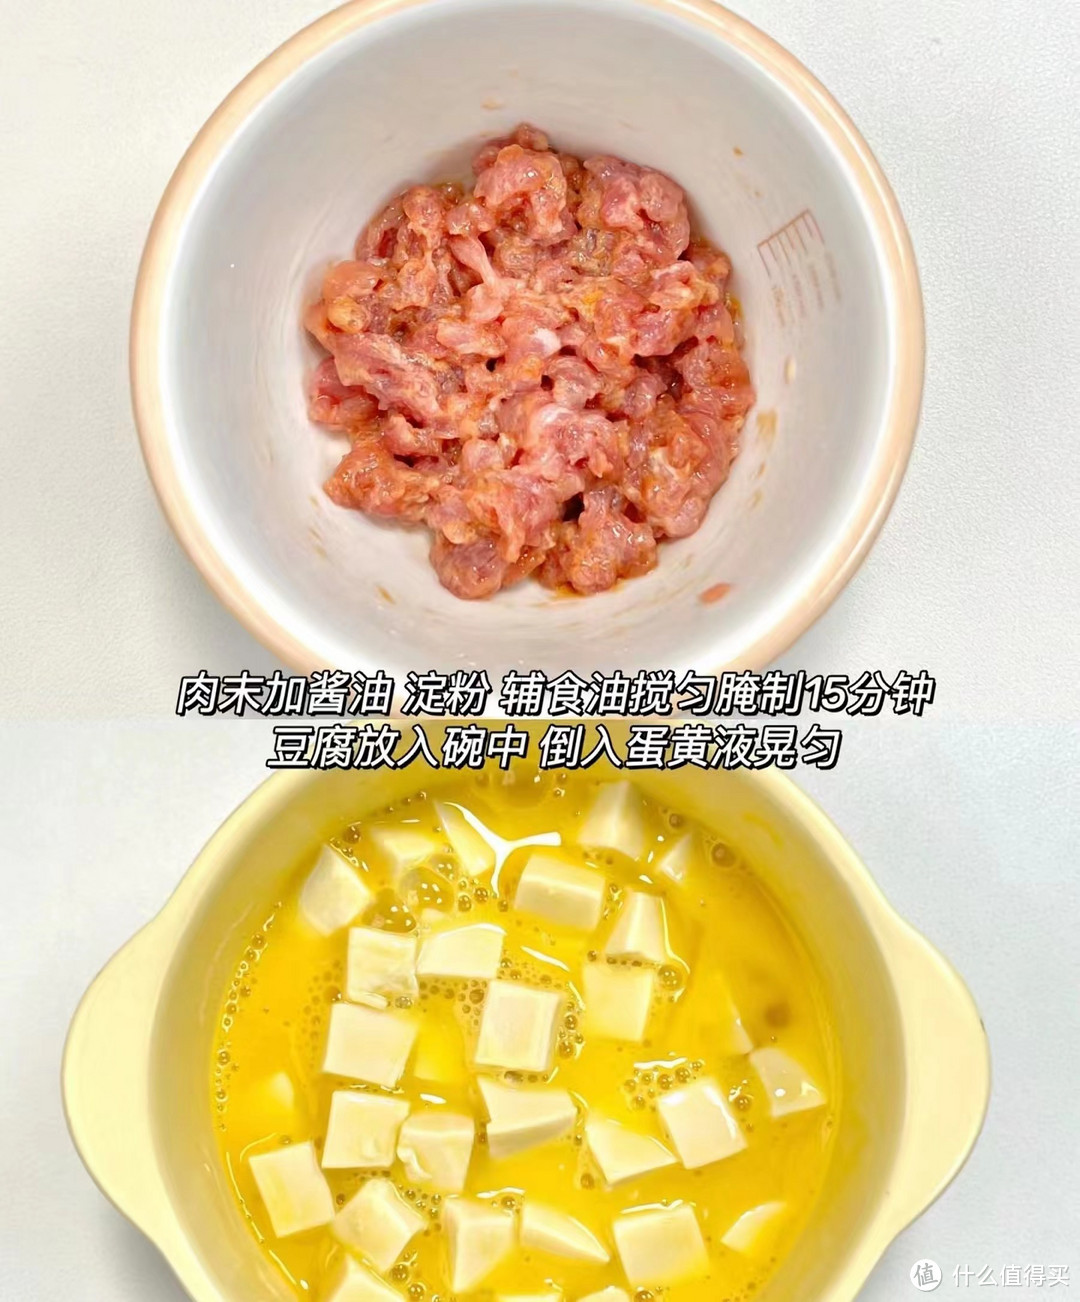 12m+辅食巨下饭的鸡蛋包豆腐|鲜香嫩滑美味